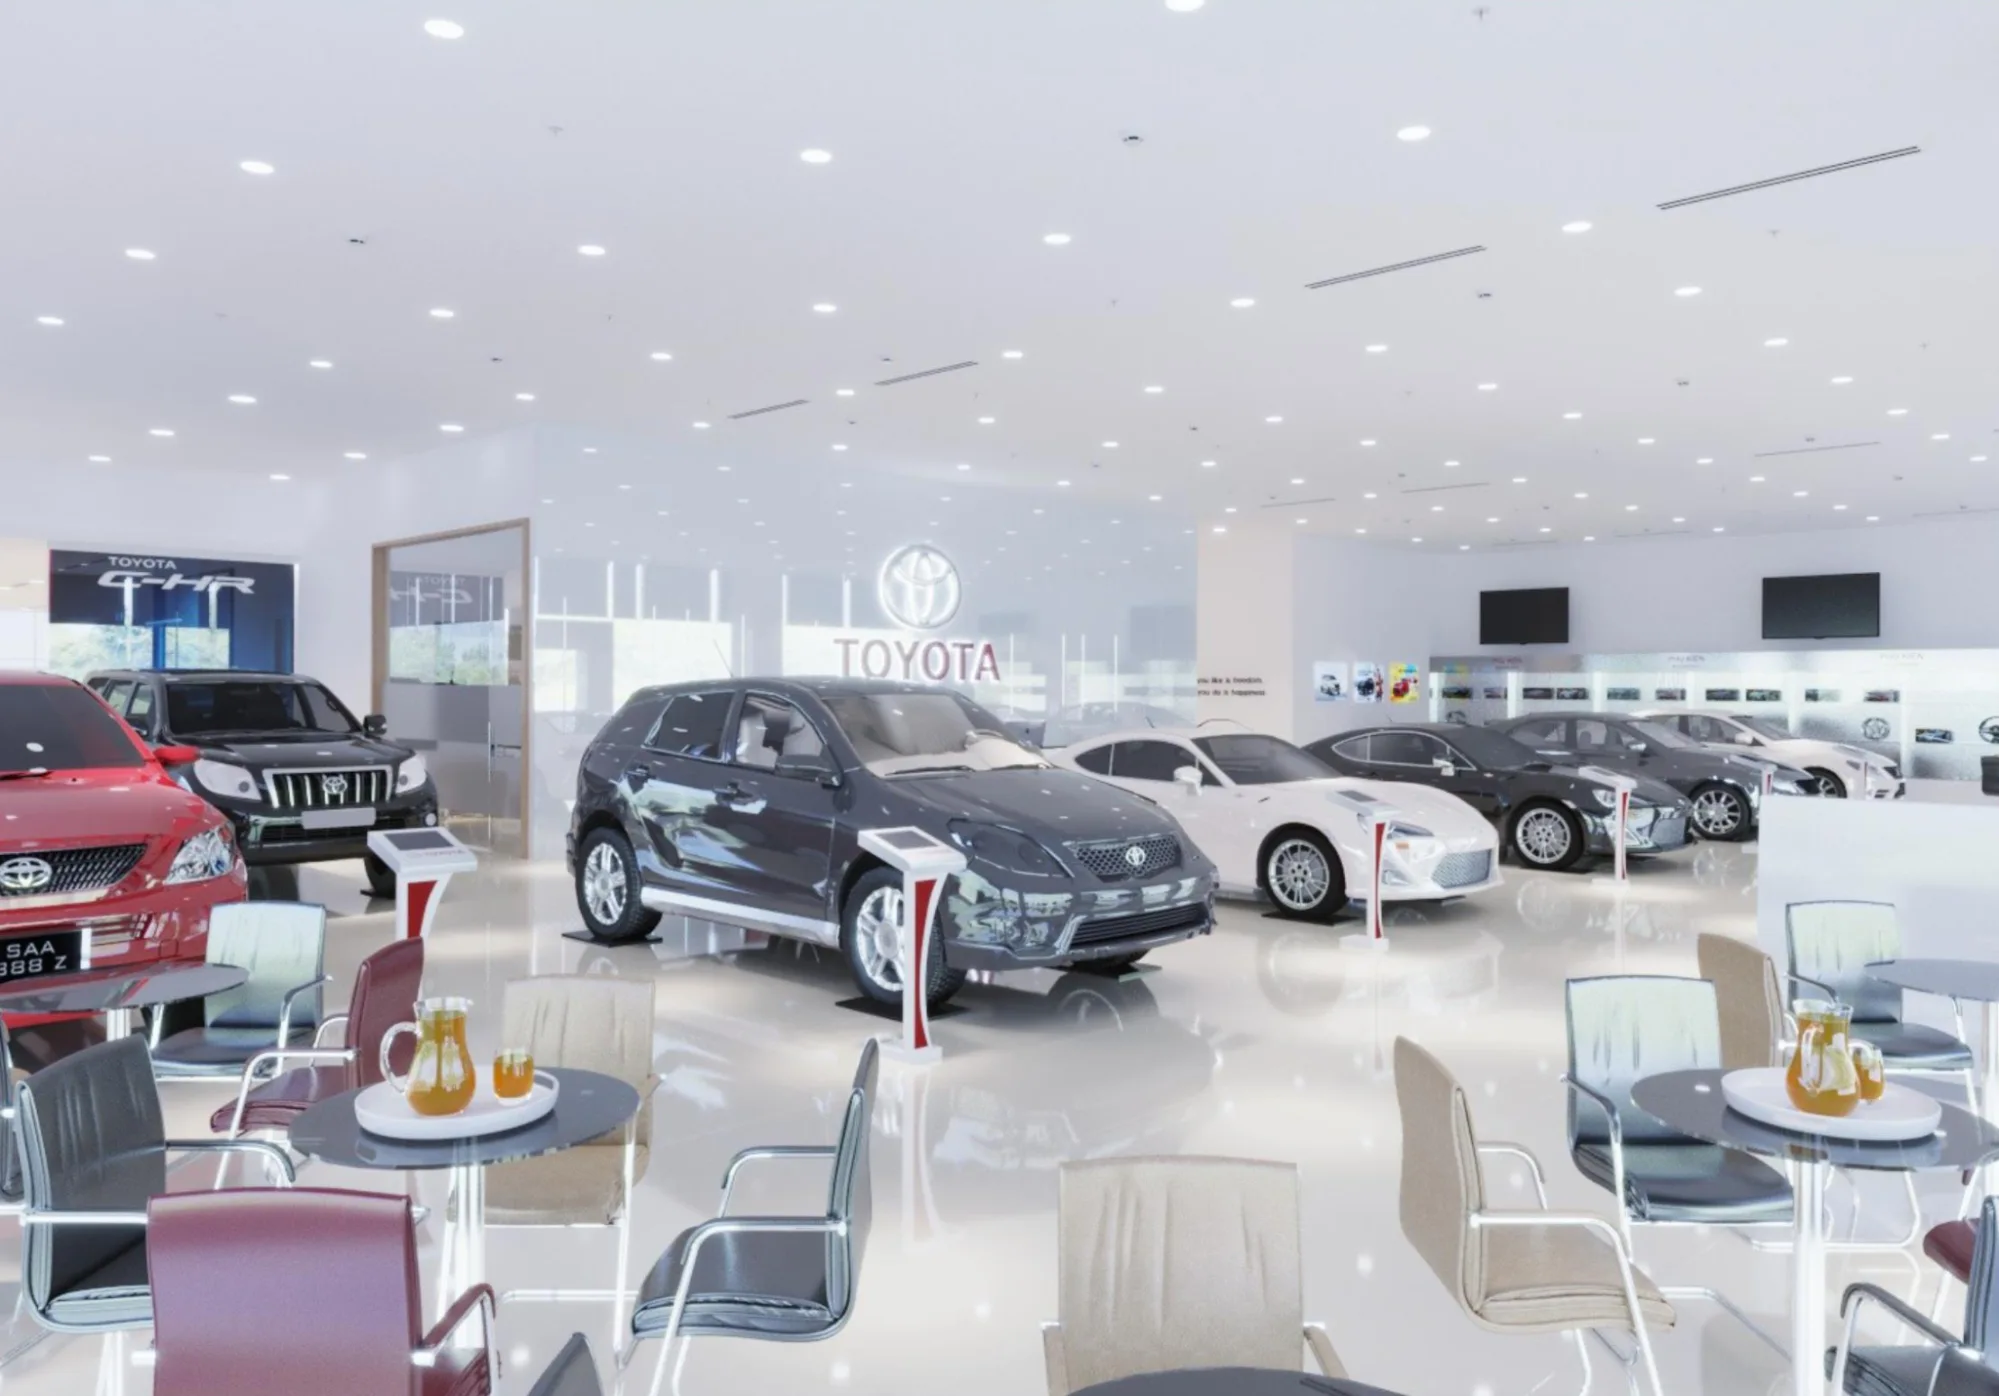 Phong cách thiết kế hiện đại tạo nên sự sang trọng cho showroom ô tô 